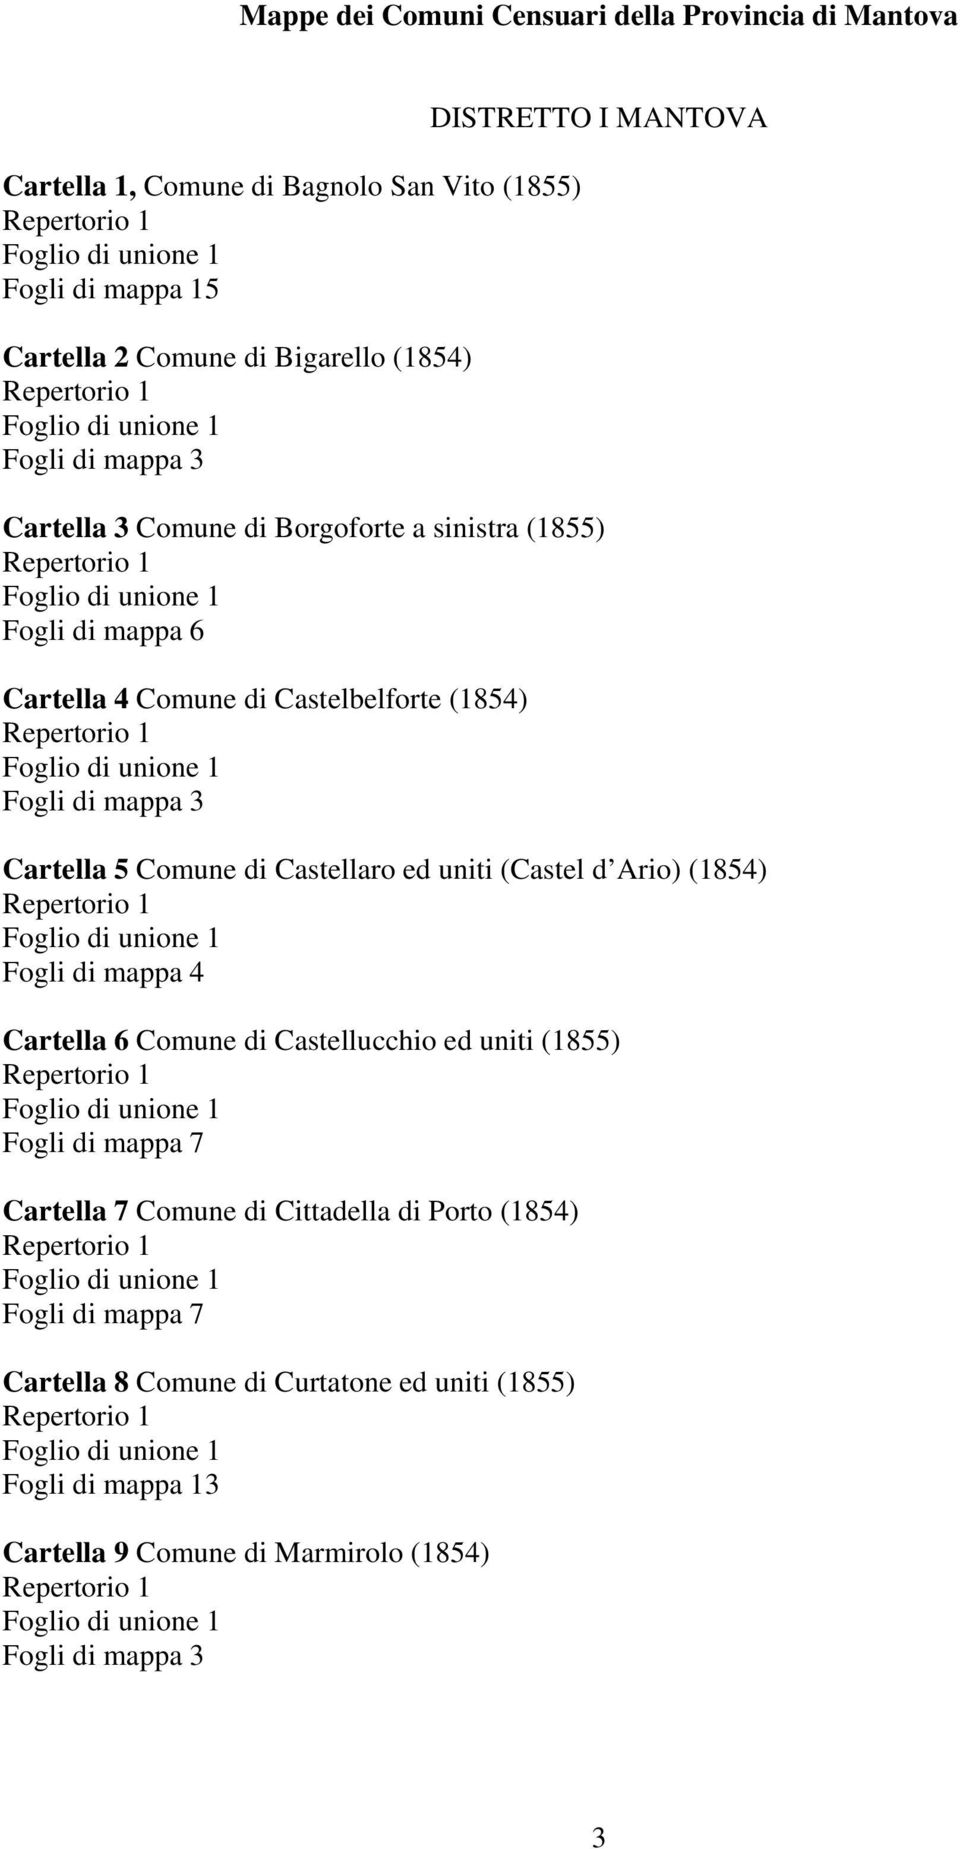 uniti (Castel d Ario) (1854) Cartella 6 Comune di Castellucchio ed uniti (1855) Fogli di mappa 7 Cartella 7 Comune di Cittadella di